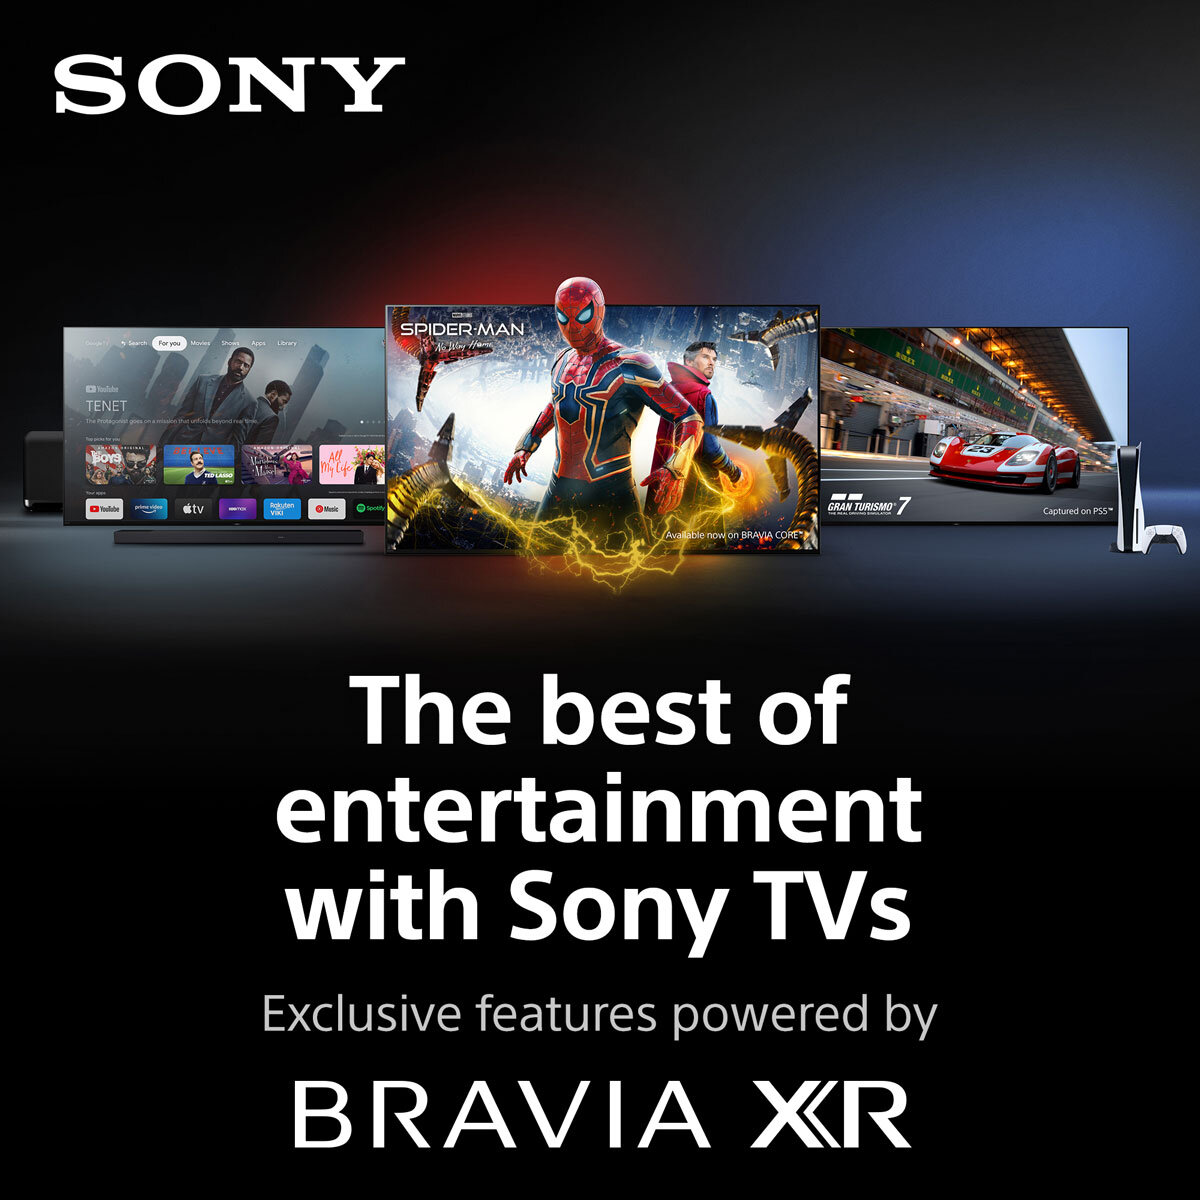 Sony OLED XR42A90K 42” BRAVIA XR™ MASTER Series 4K Ultra HD HDR Goo